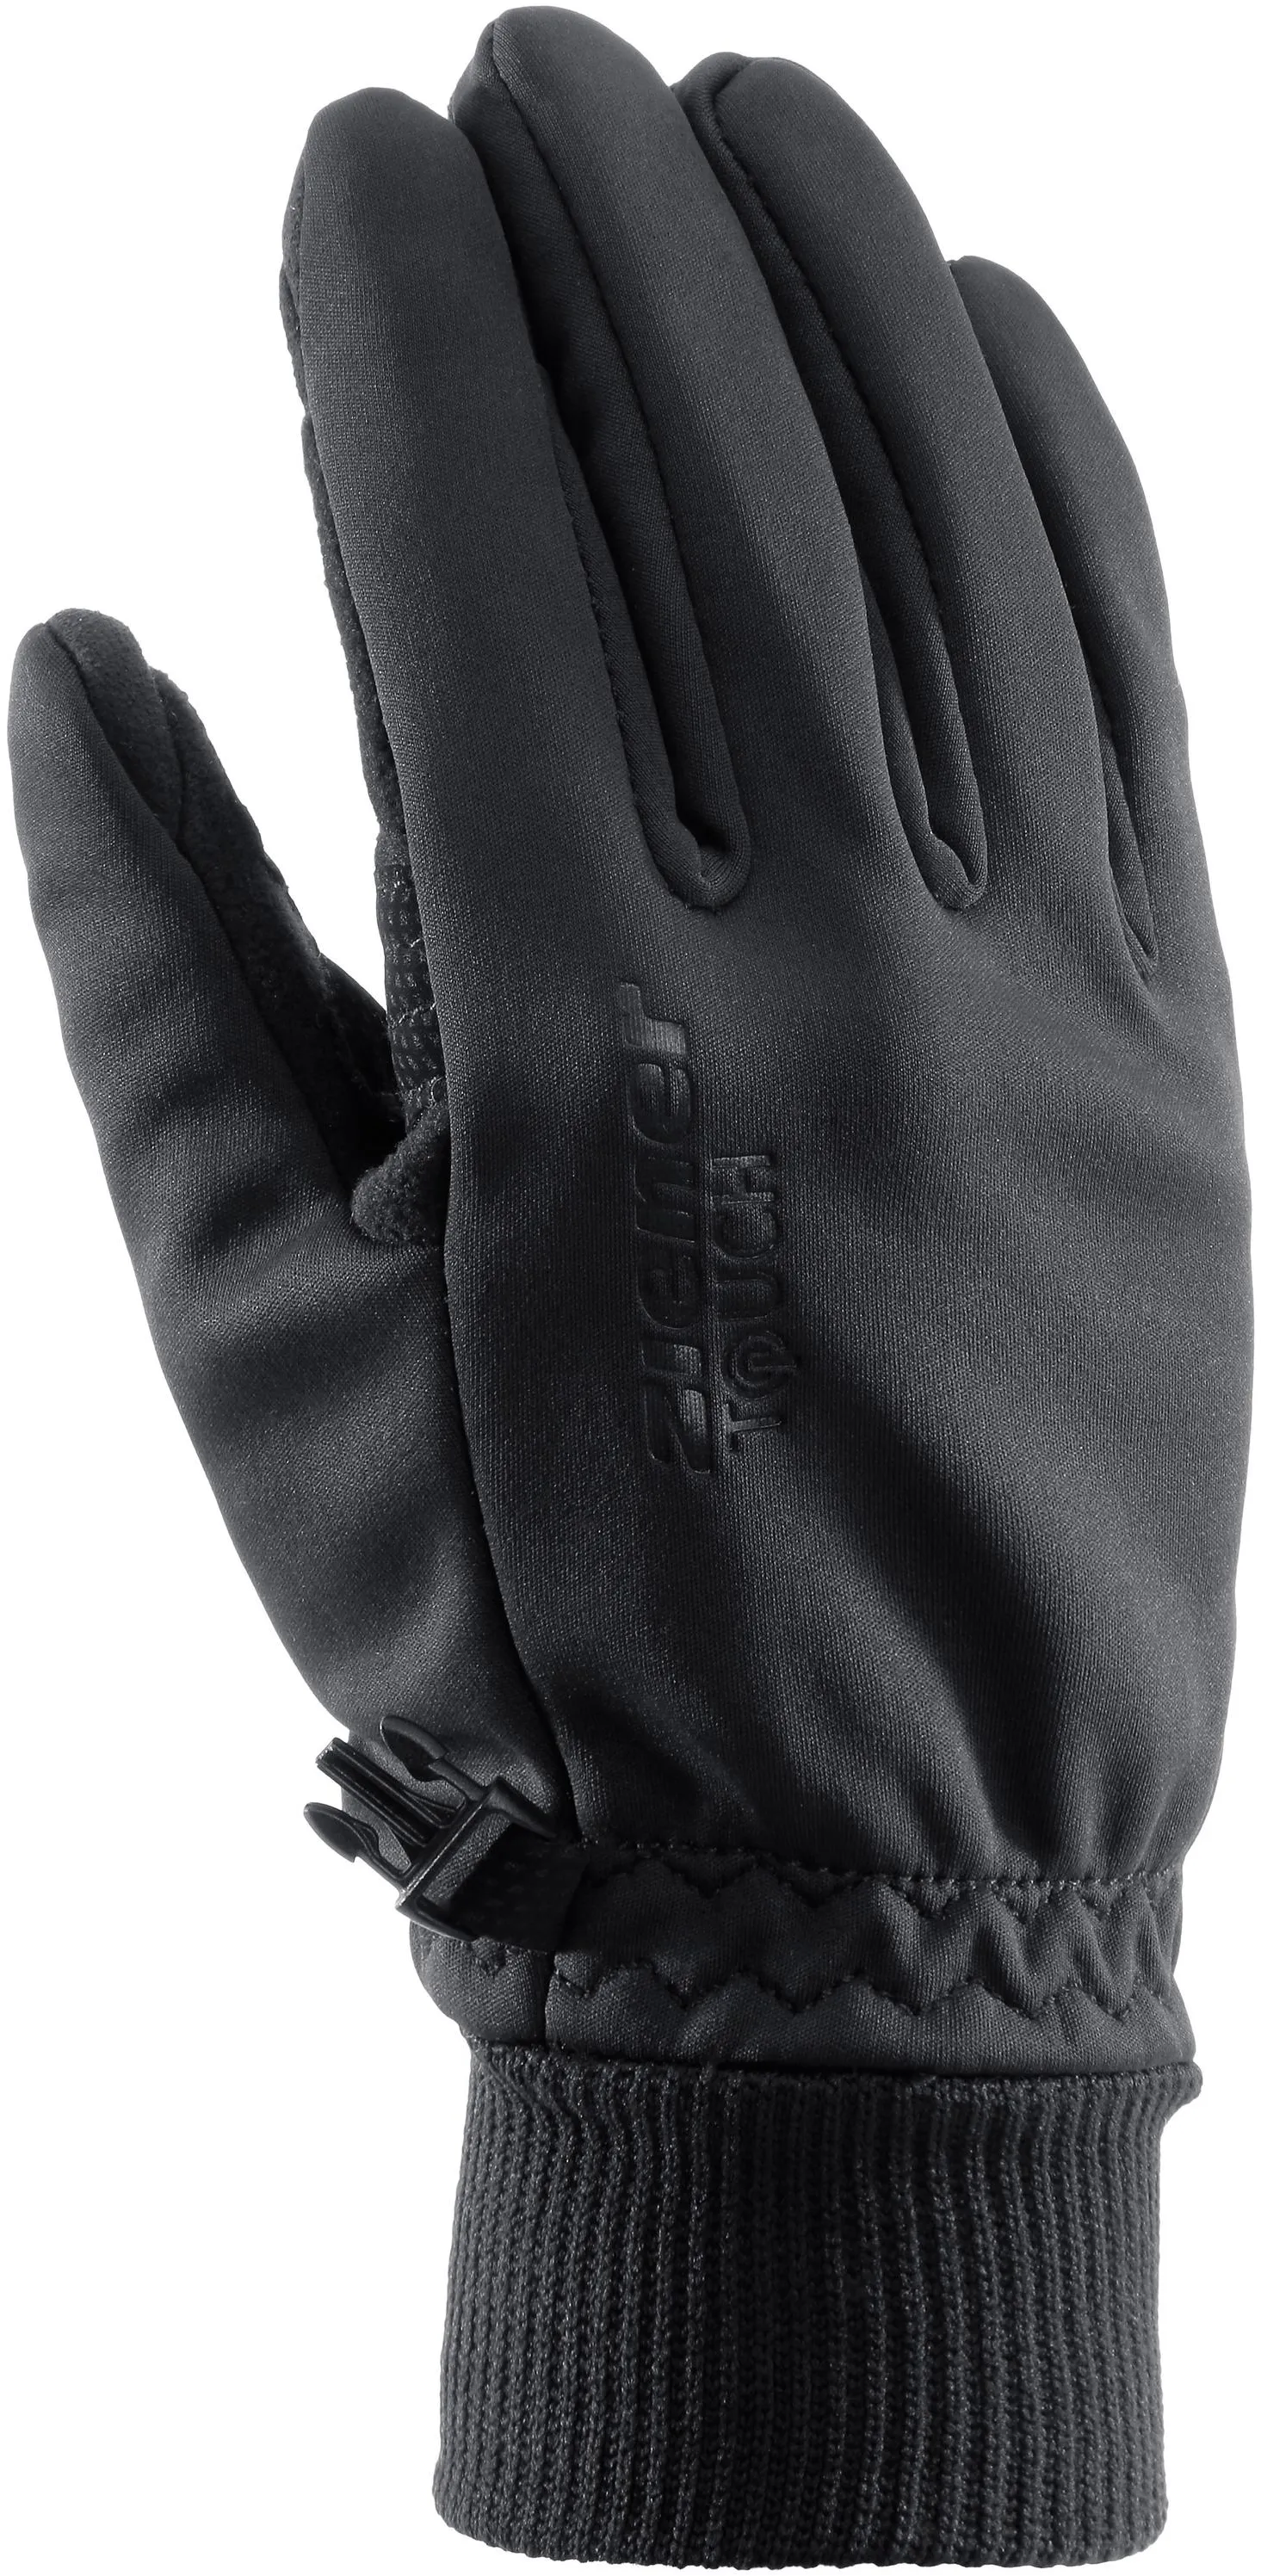 Ziener IDAHO Handschuh in schwarz, Größe 6 1/2 - schwarz